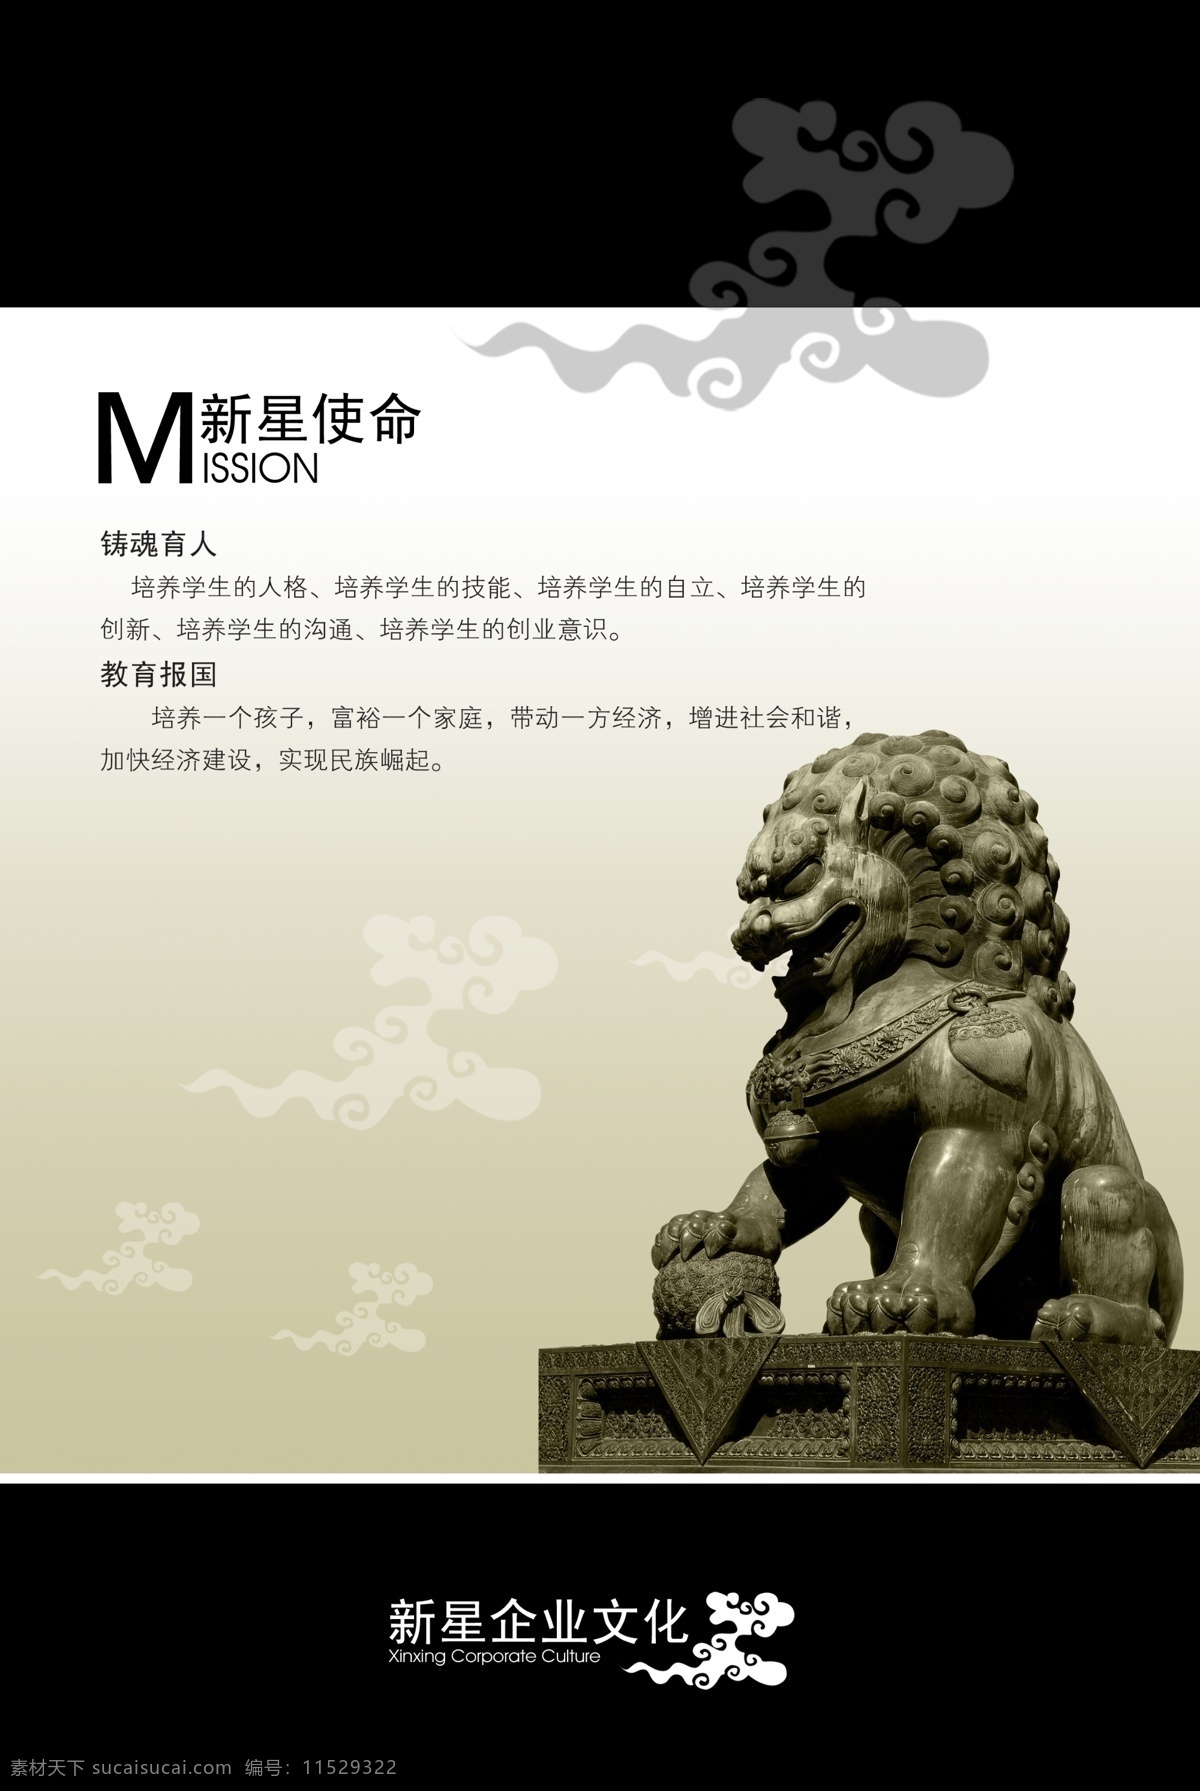 现代感 企业 文化 企业文化 企业宣传 石狮 中国风 海报 企业文化海报